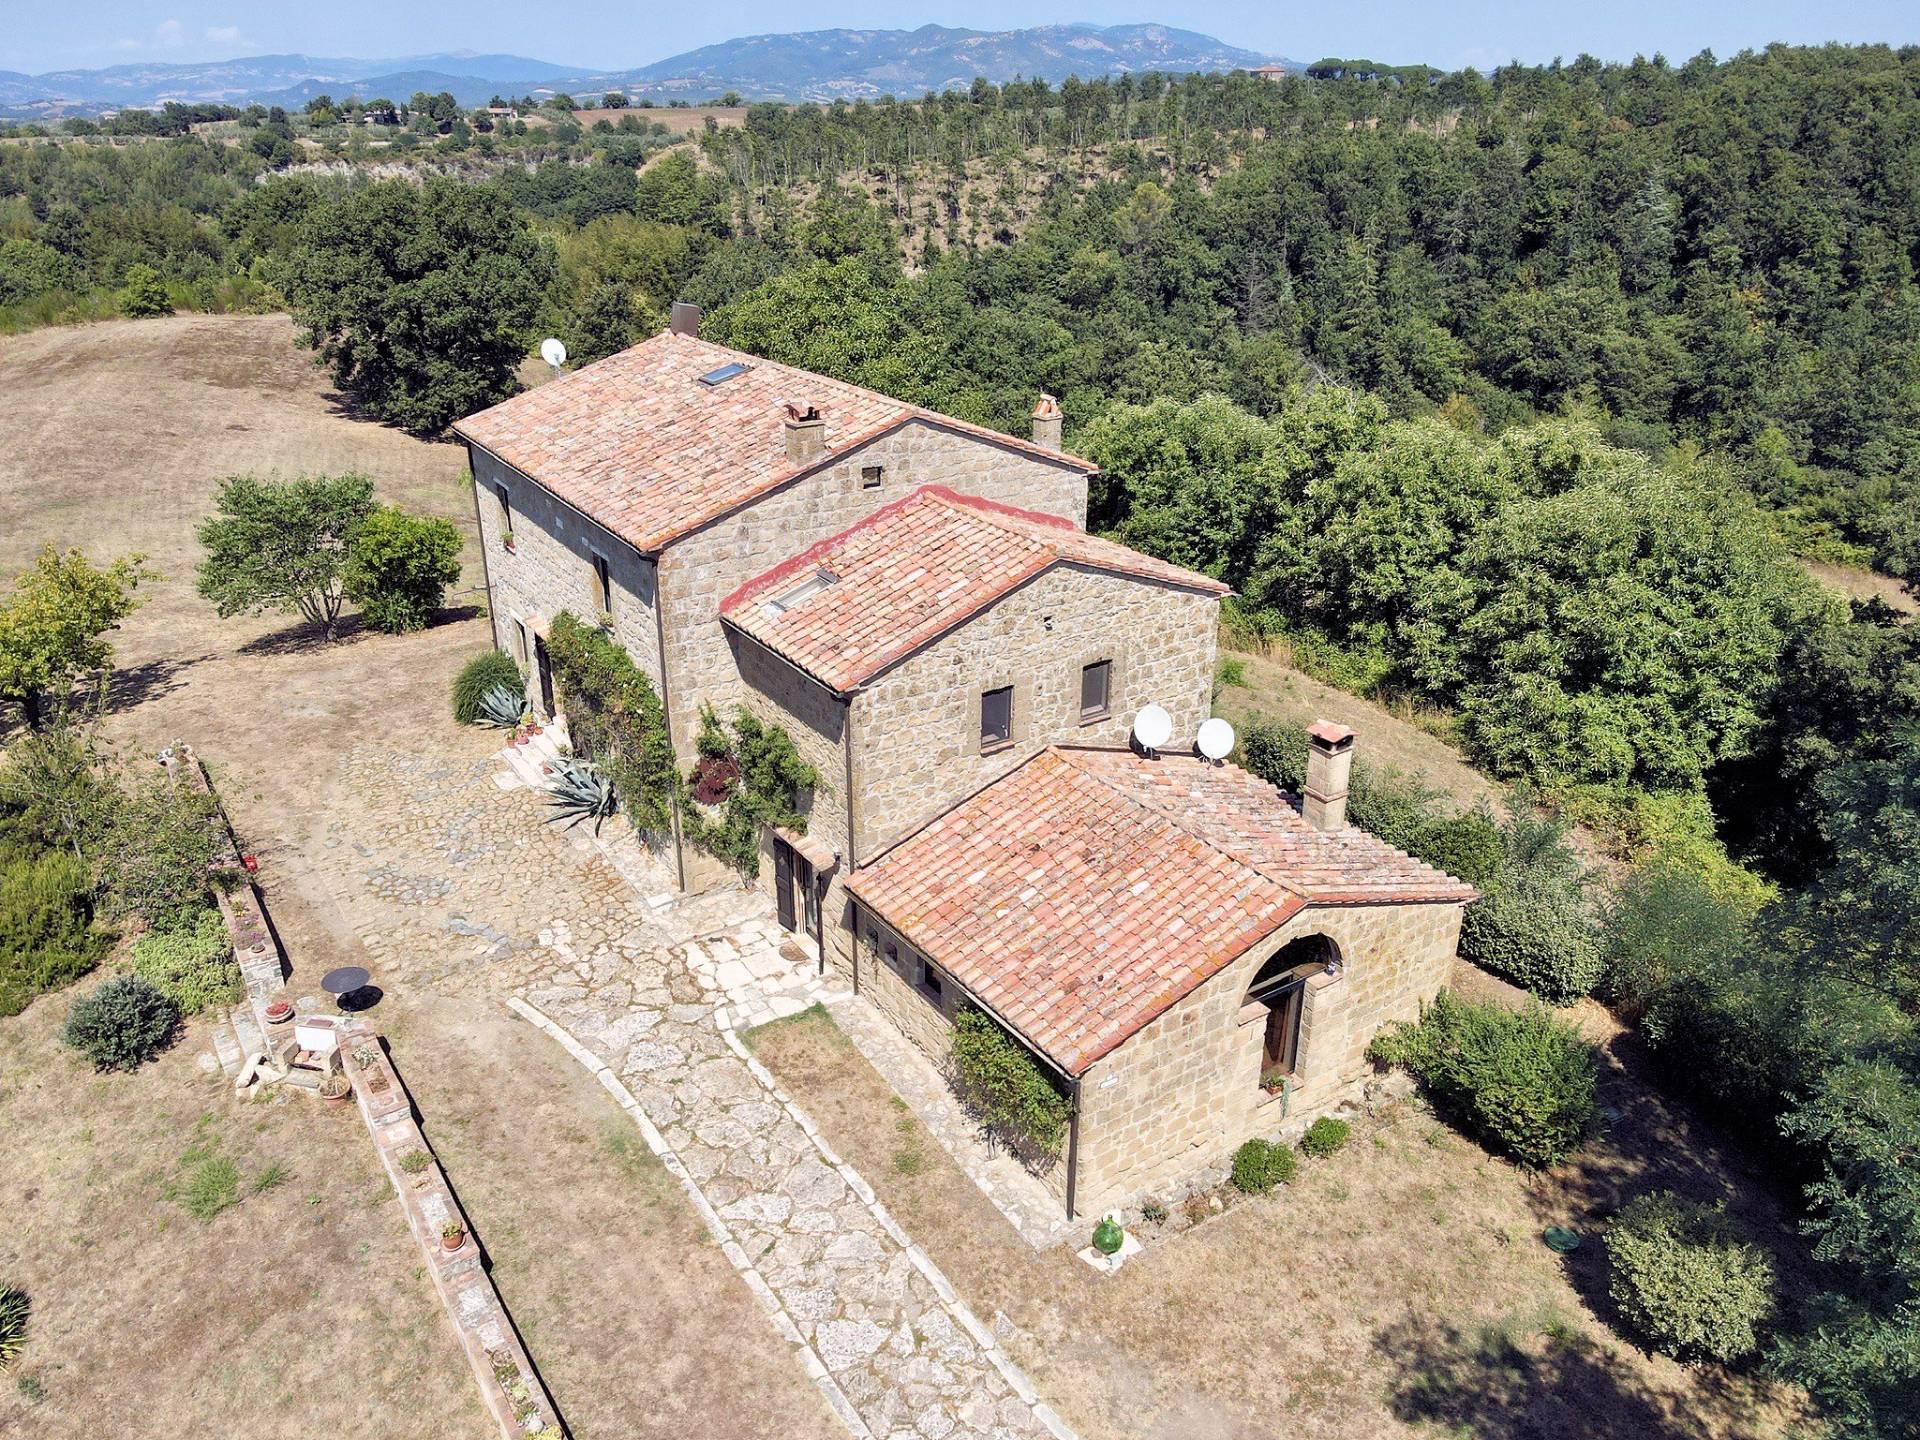 1302-Casale in stile Toscano con terreno e vista panoramica-Pitigliano-2 Agenzia Immobiliare ASIP